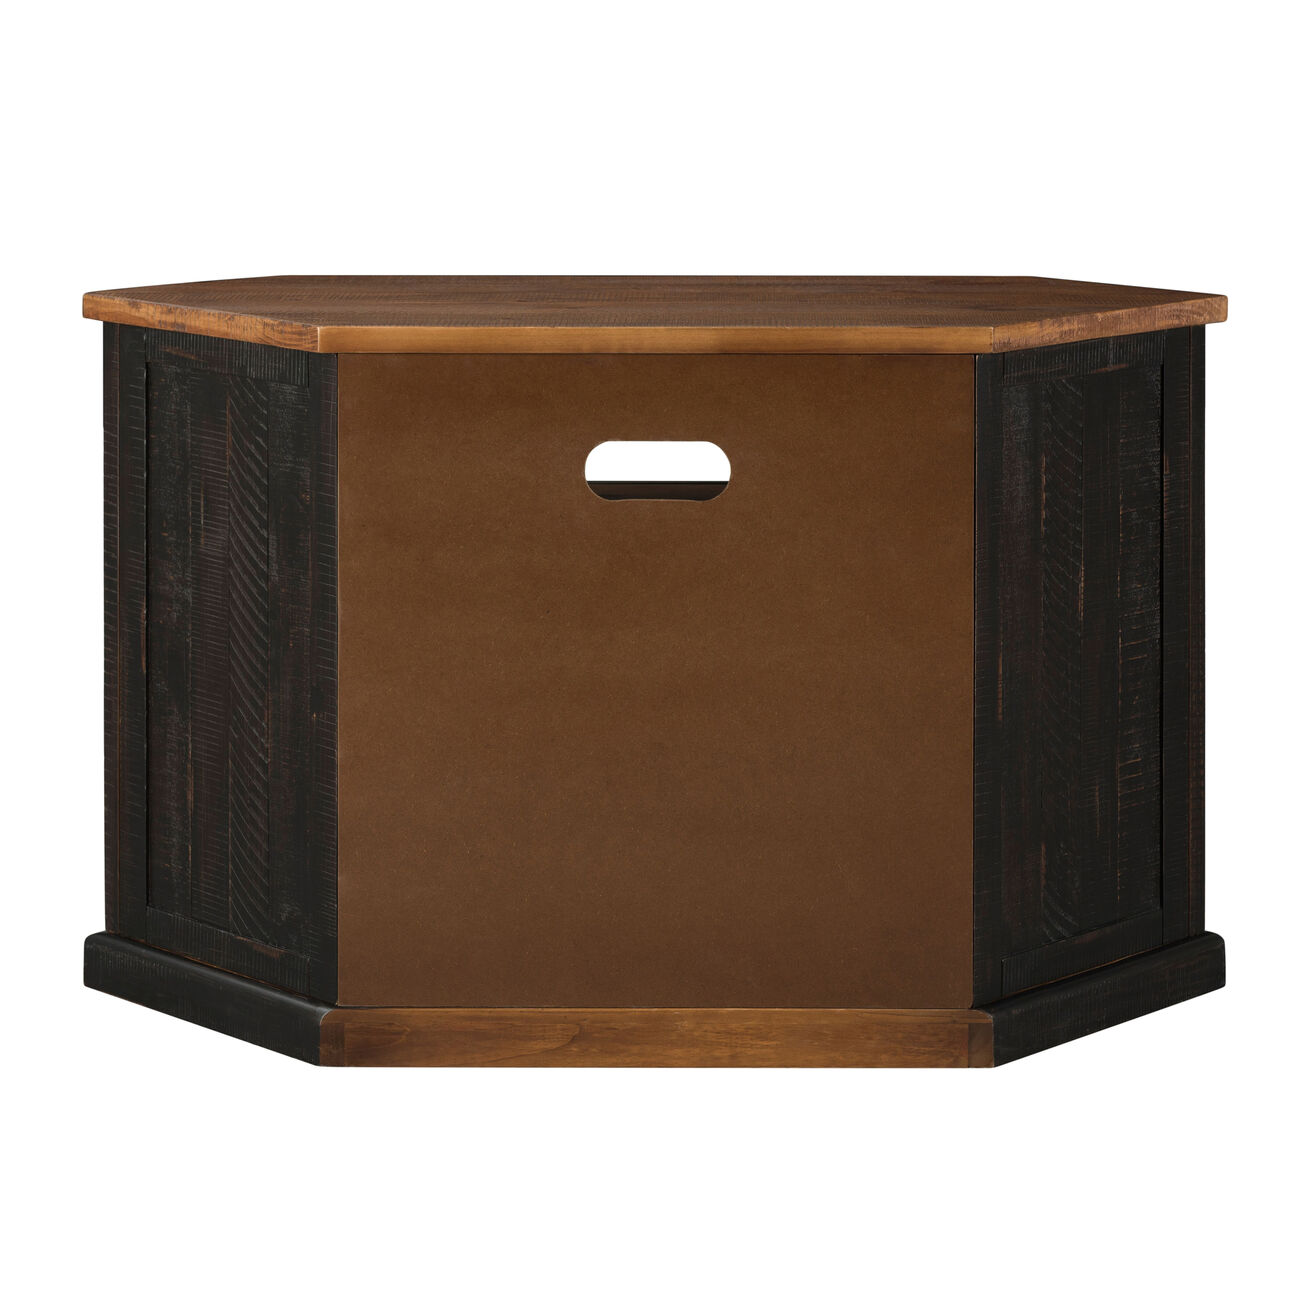 Rustic Style Wooden Corner TV Stand with 2 Door Cabinet, Brown